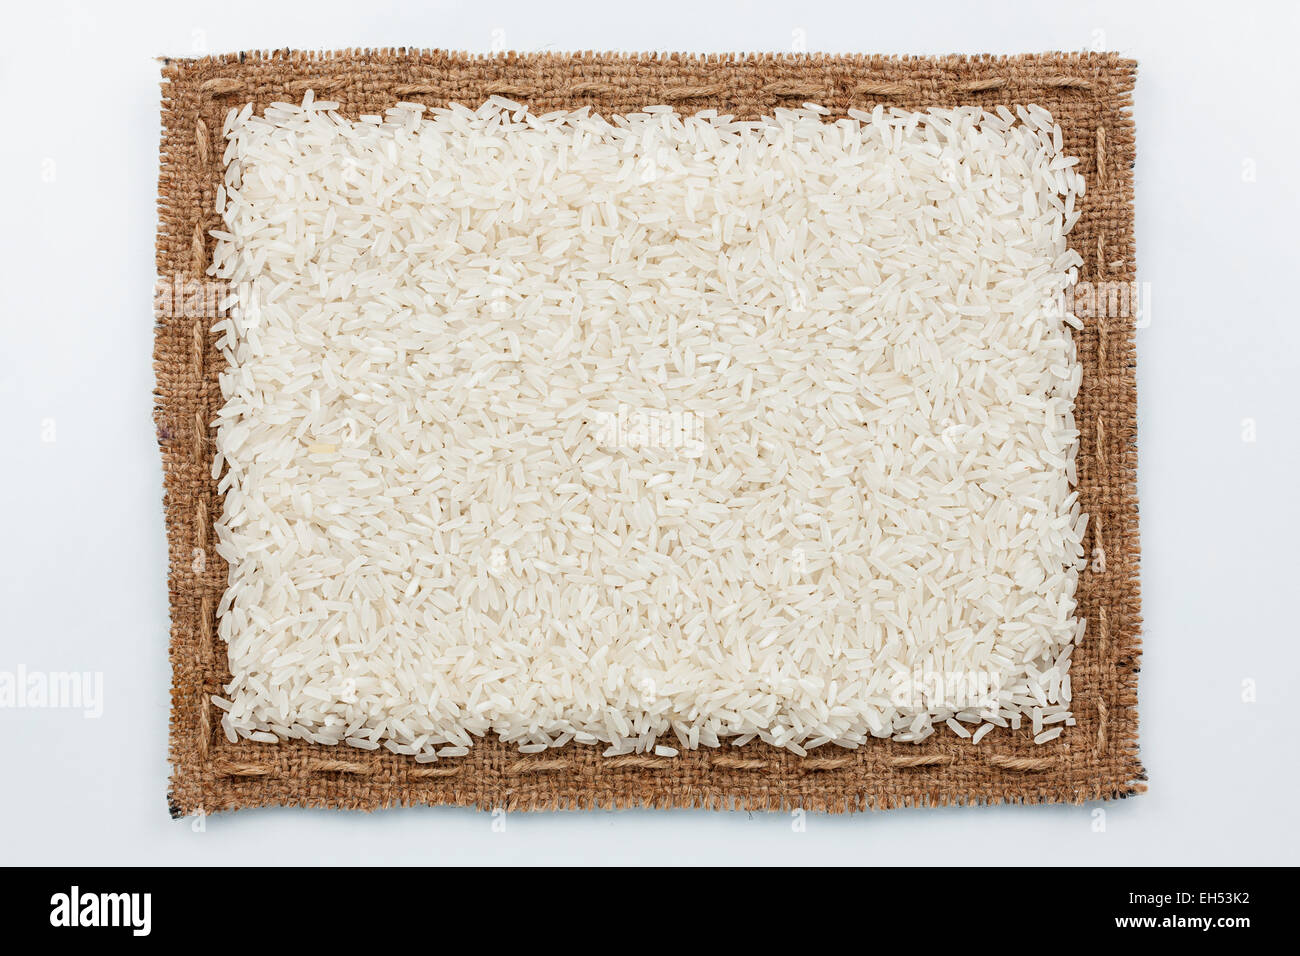 Rahmen von Sackleinen und Reis Getreide, liegend auf einem weißen Hintergrund Stockfoto